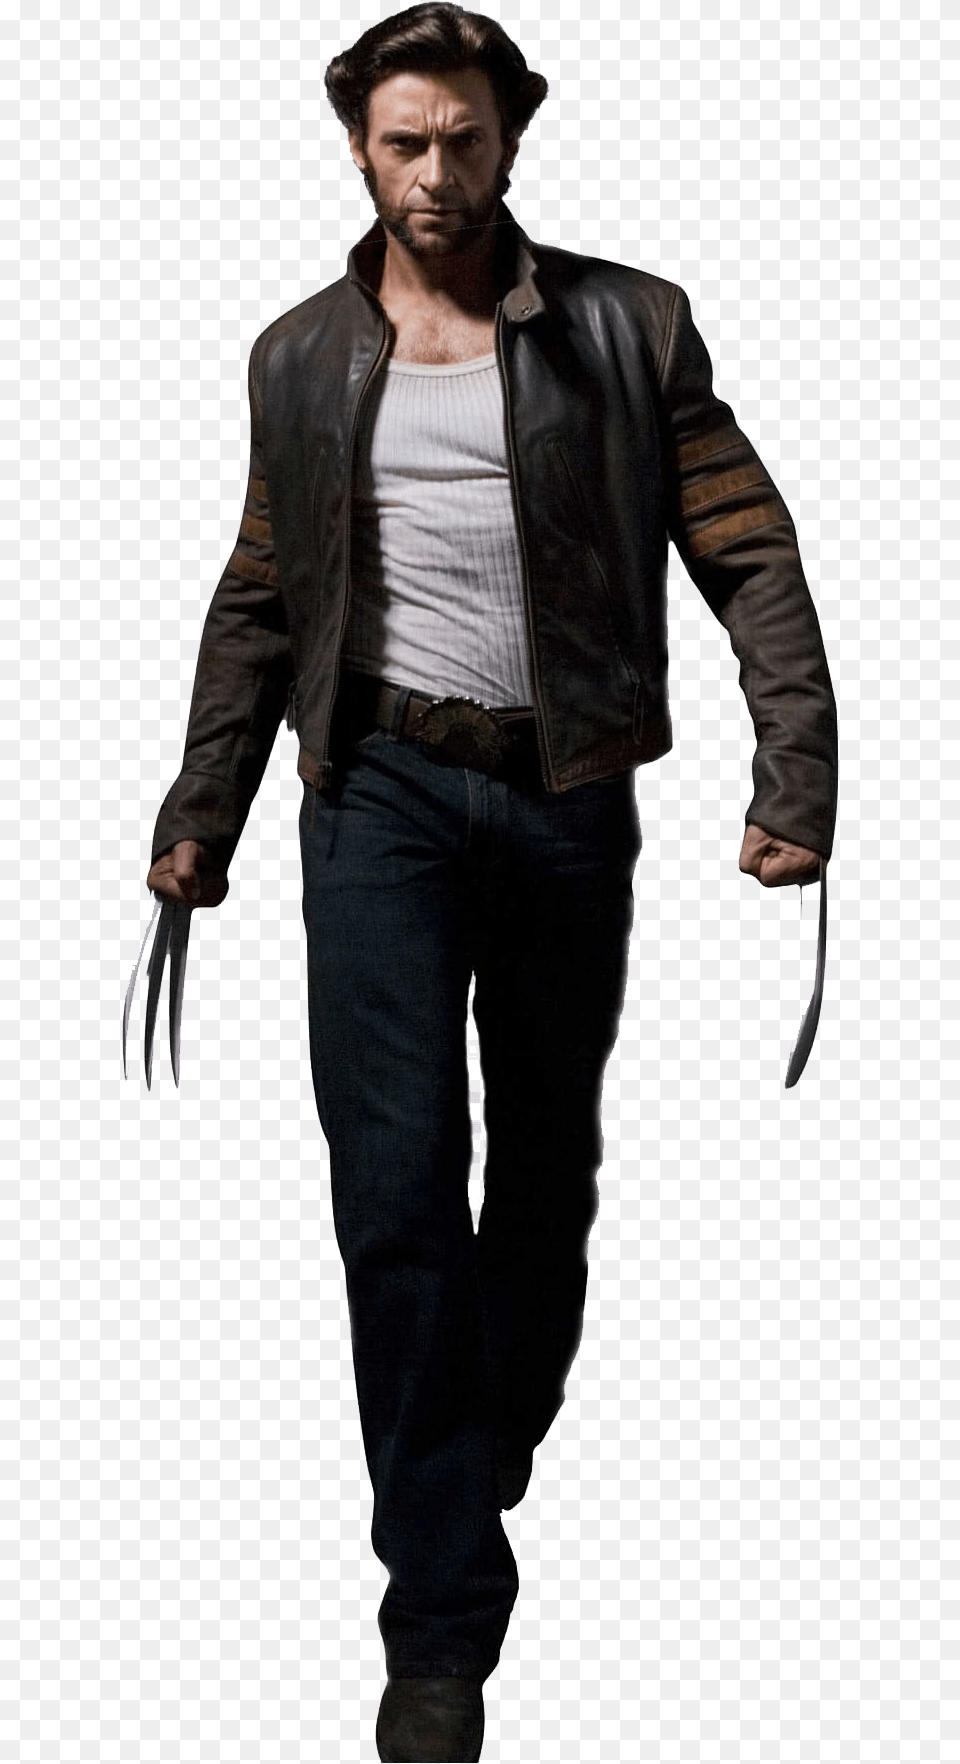 Hugh Jackman Download Transparent Hugh Jackman Wolverine, Clothing, Coat, Jacket, Adult Png Image